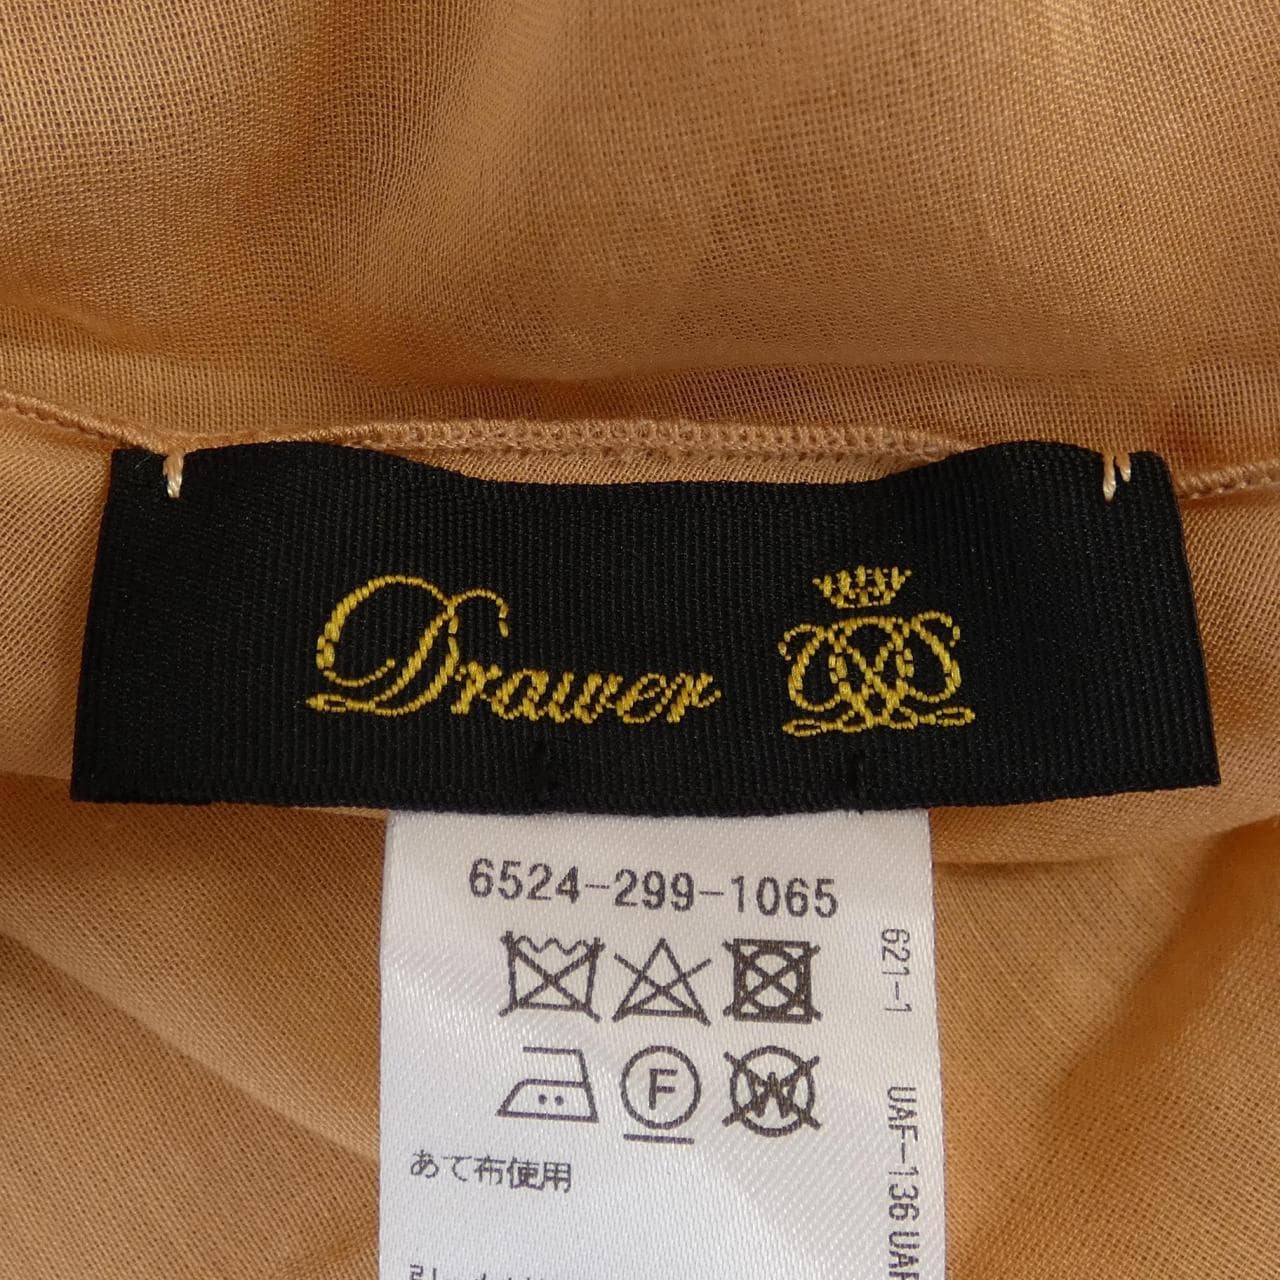 DRAWER skirt